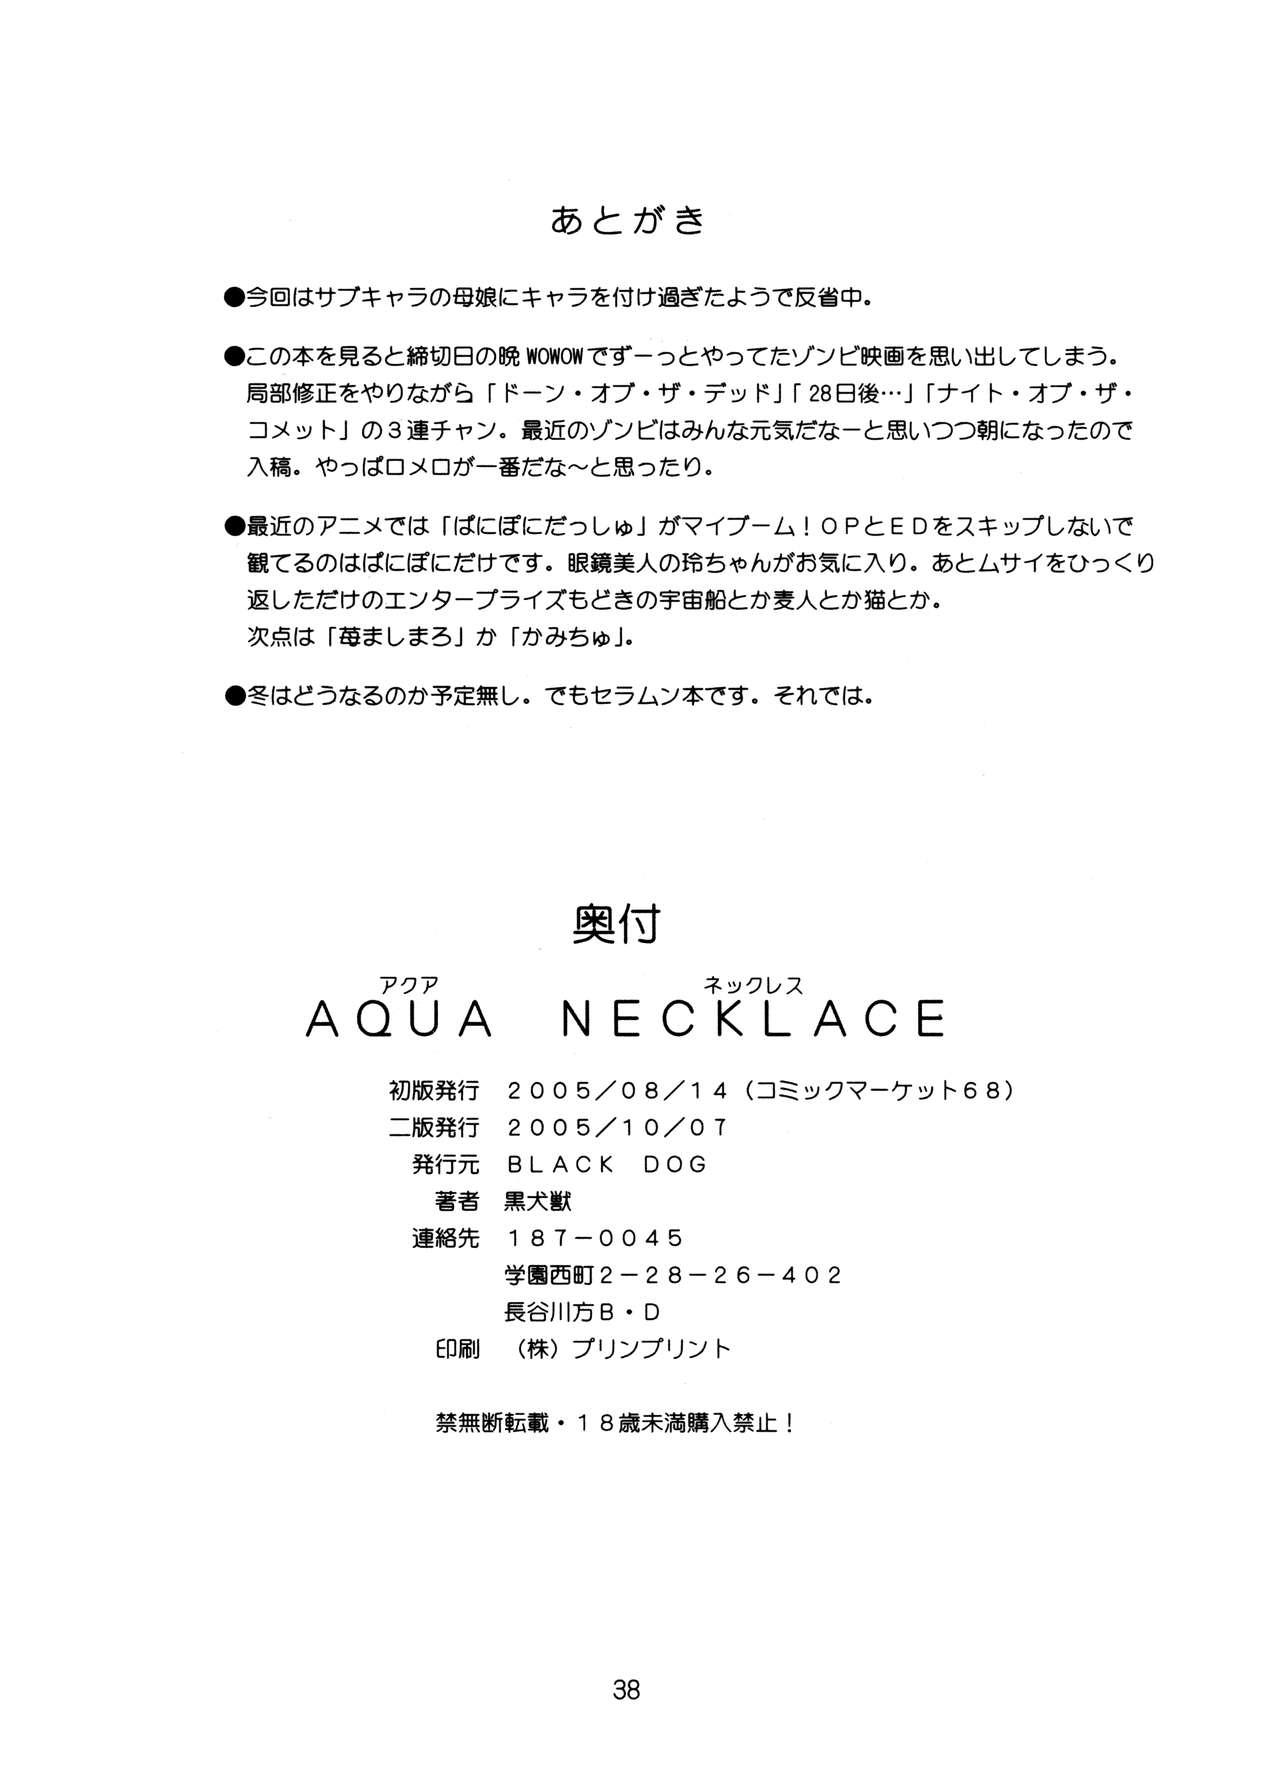 Aqua Necklace 37